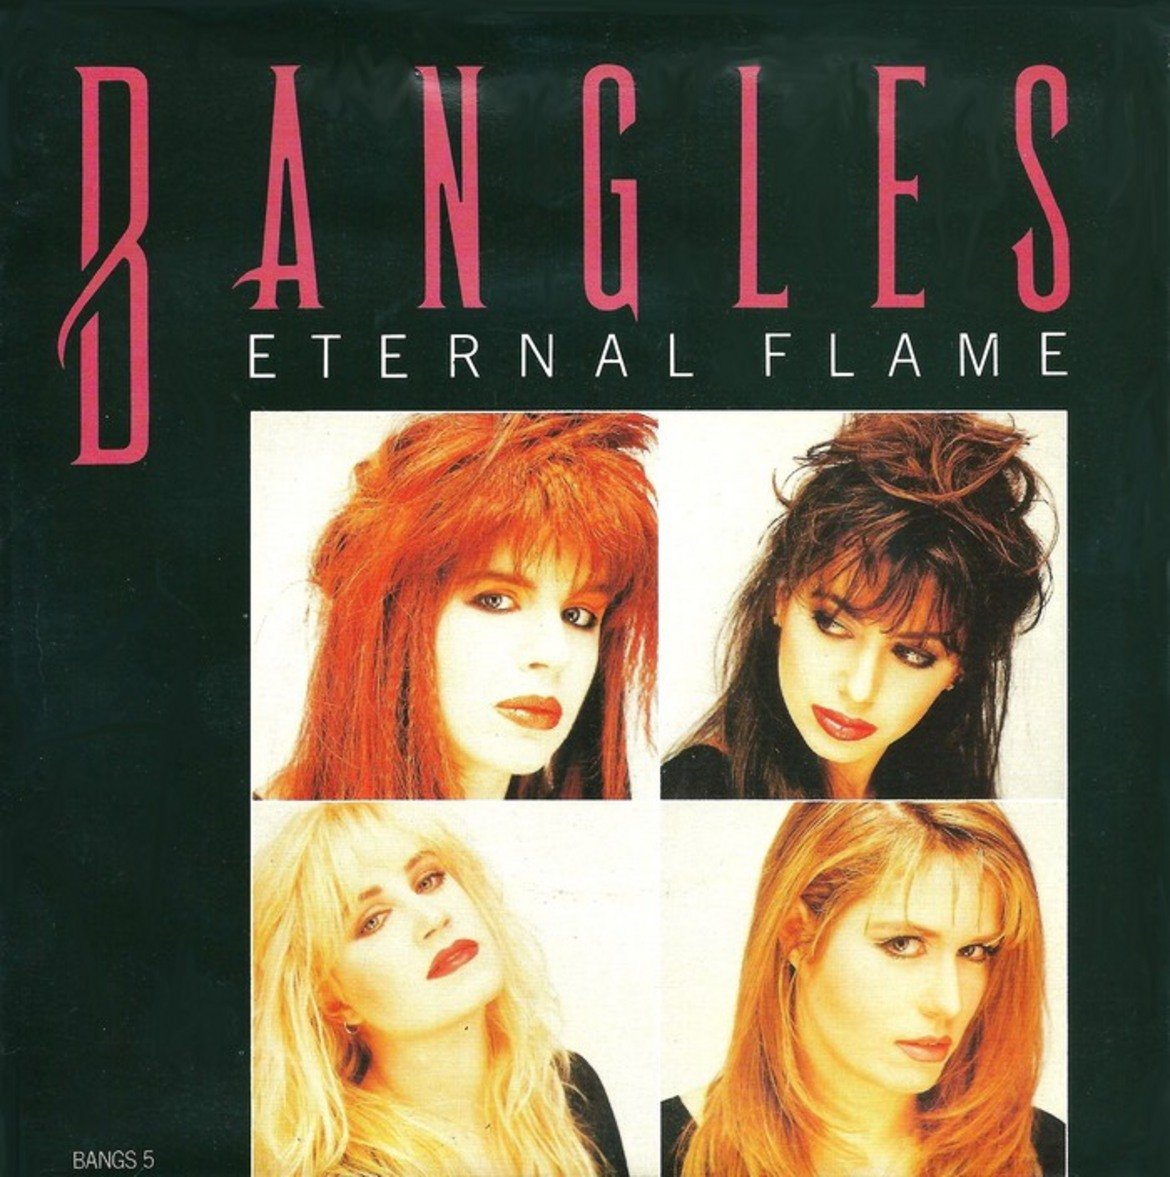 The Bangles - Eternal Flame
Някои песни просто заслужават мястото си тук. Без Eternal Flame тази компилация би била някак недовършена.